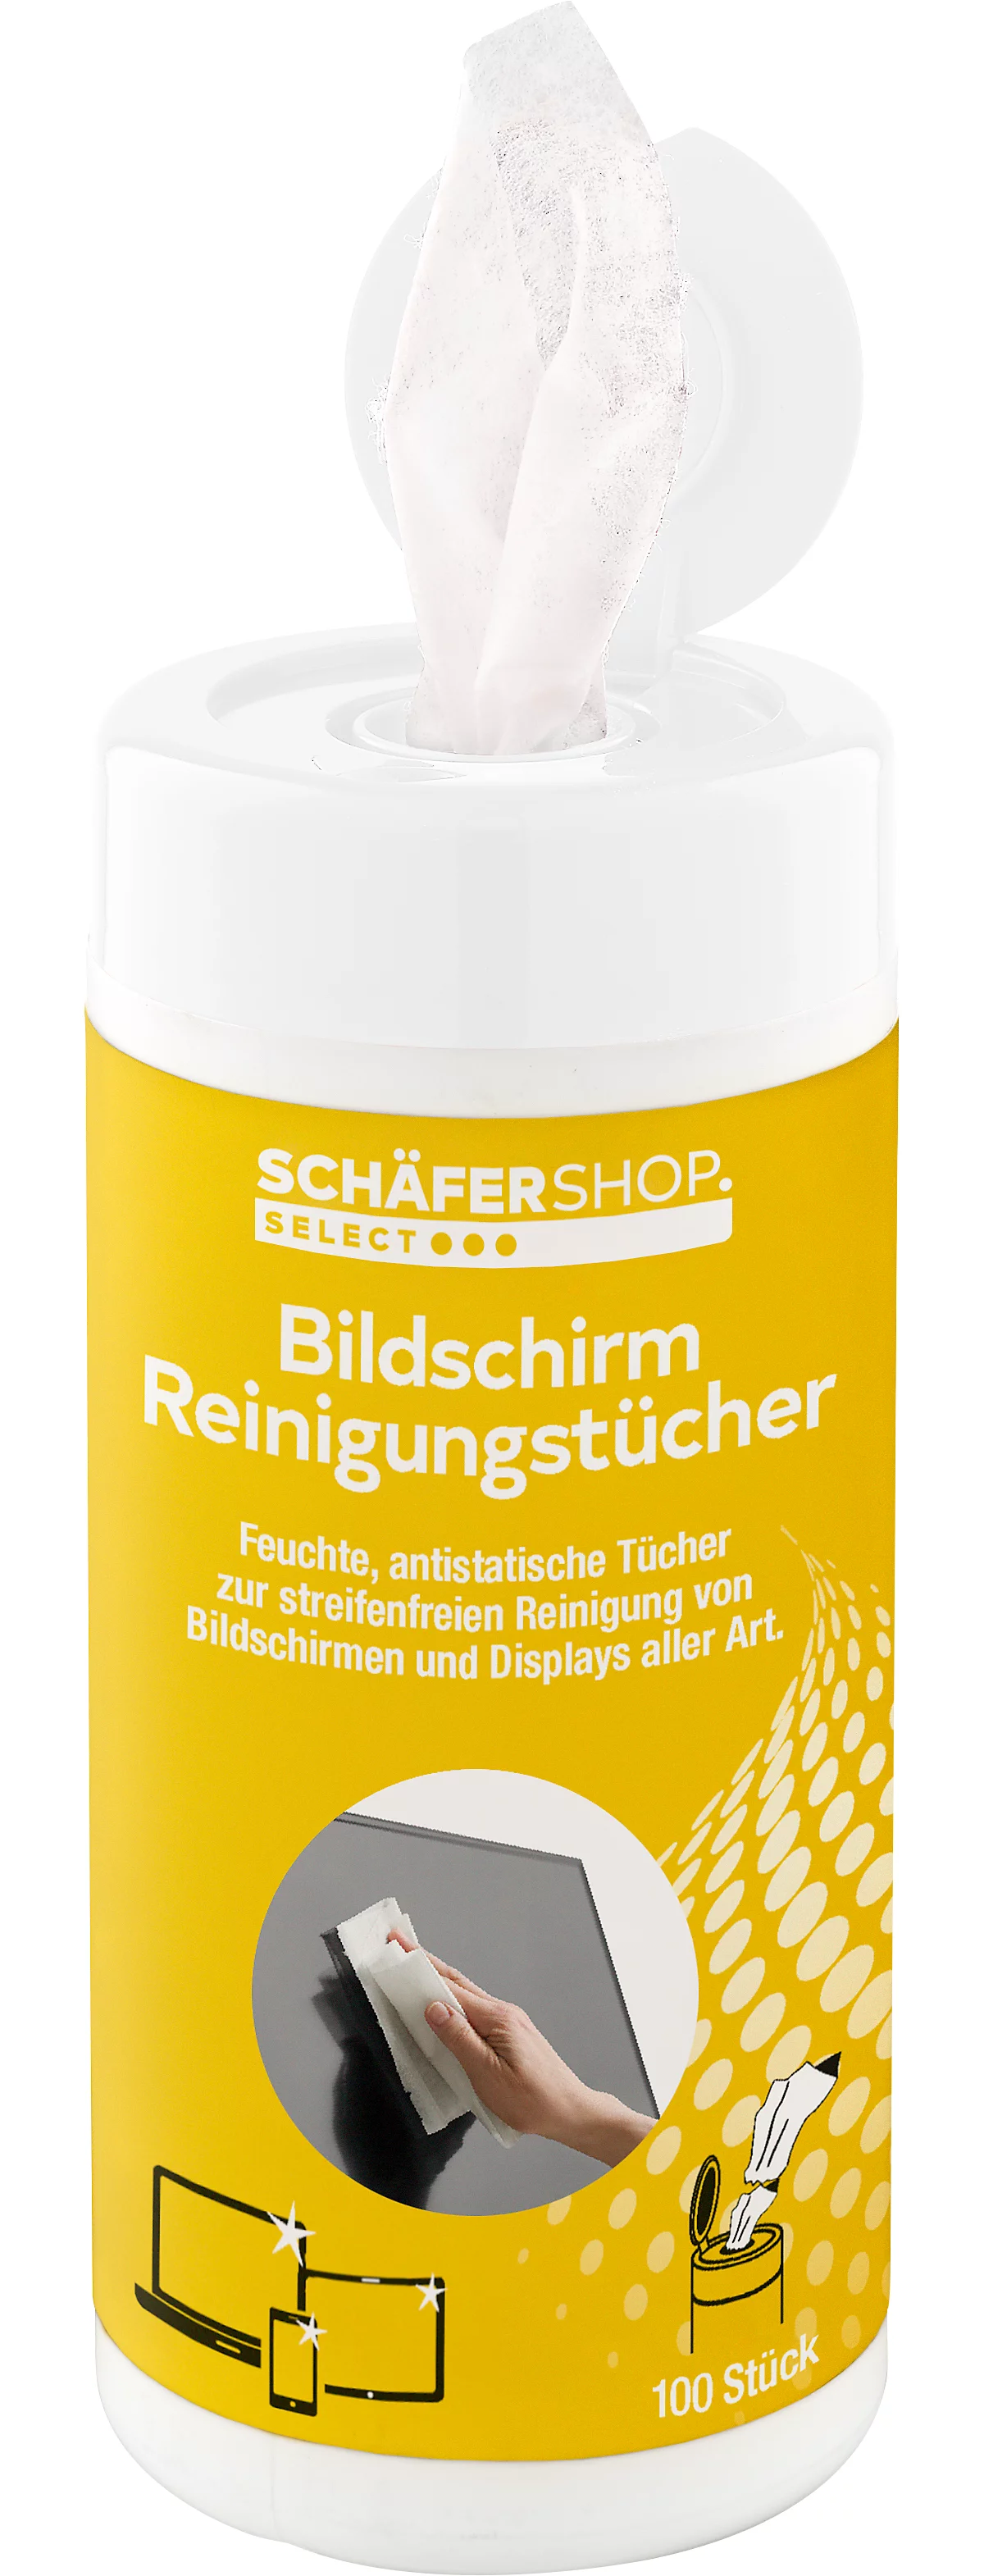 Schäfer Shop Select Reinigungstücher, für Bildschirme, feucht, in praktischer Spenderdose, 100 Stück